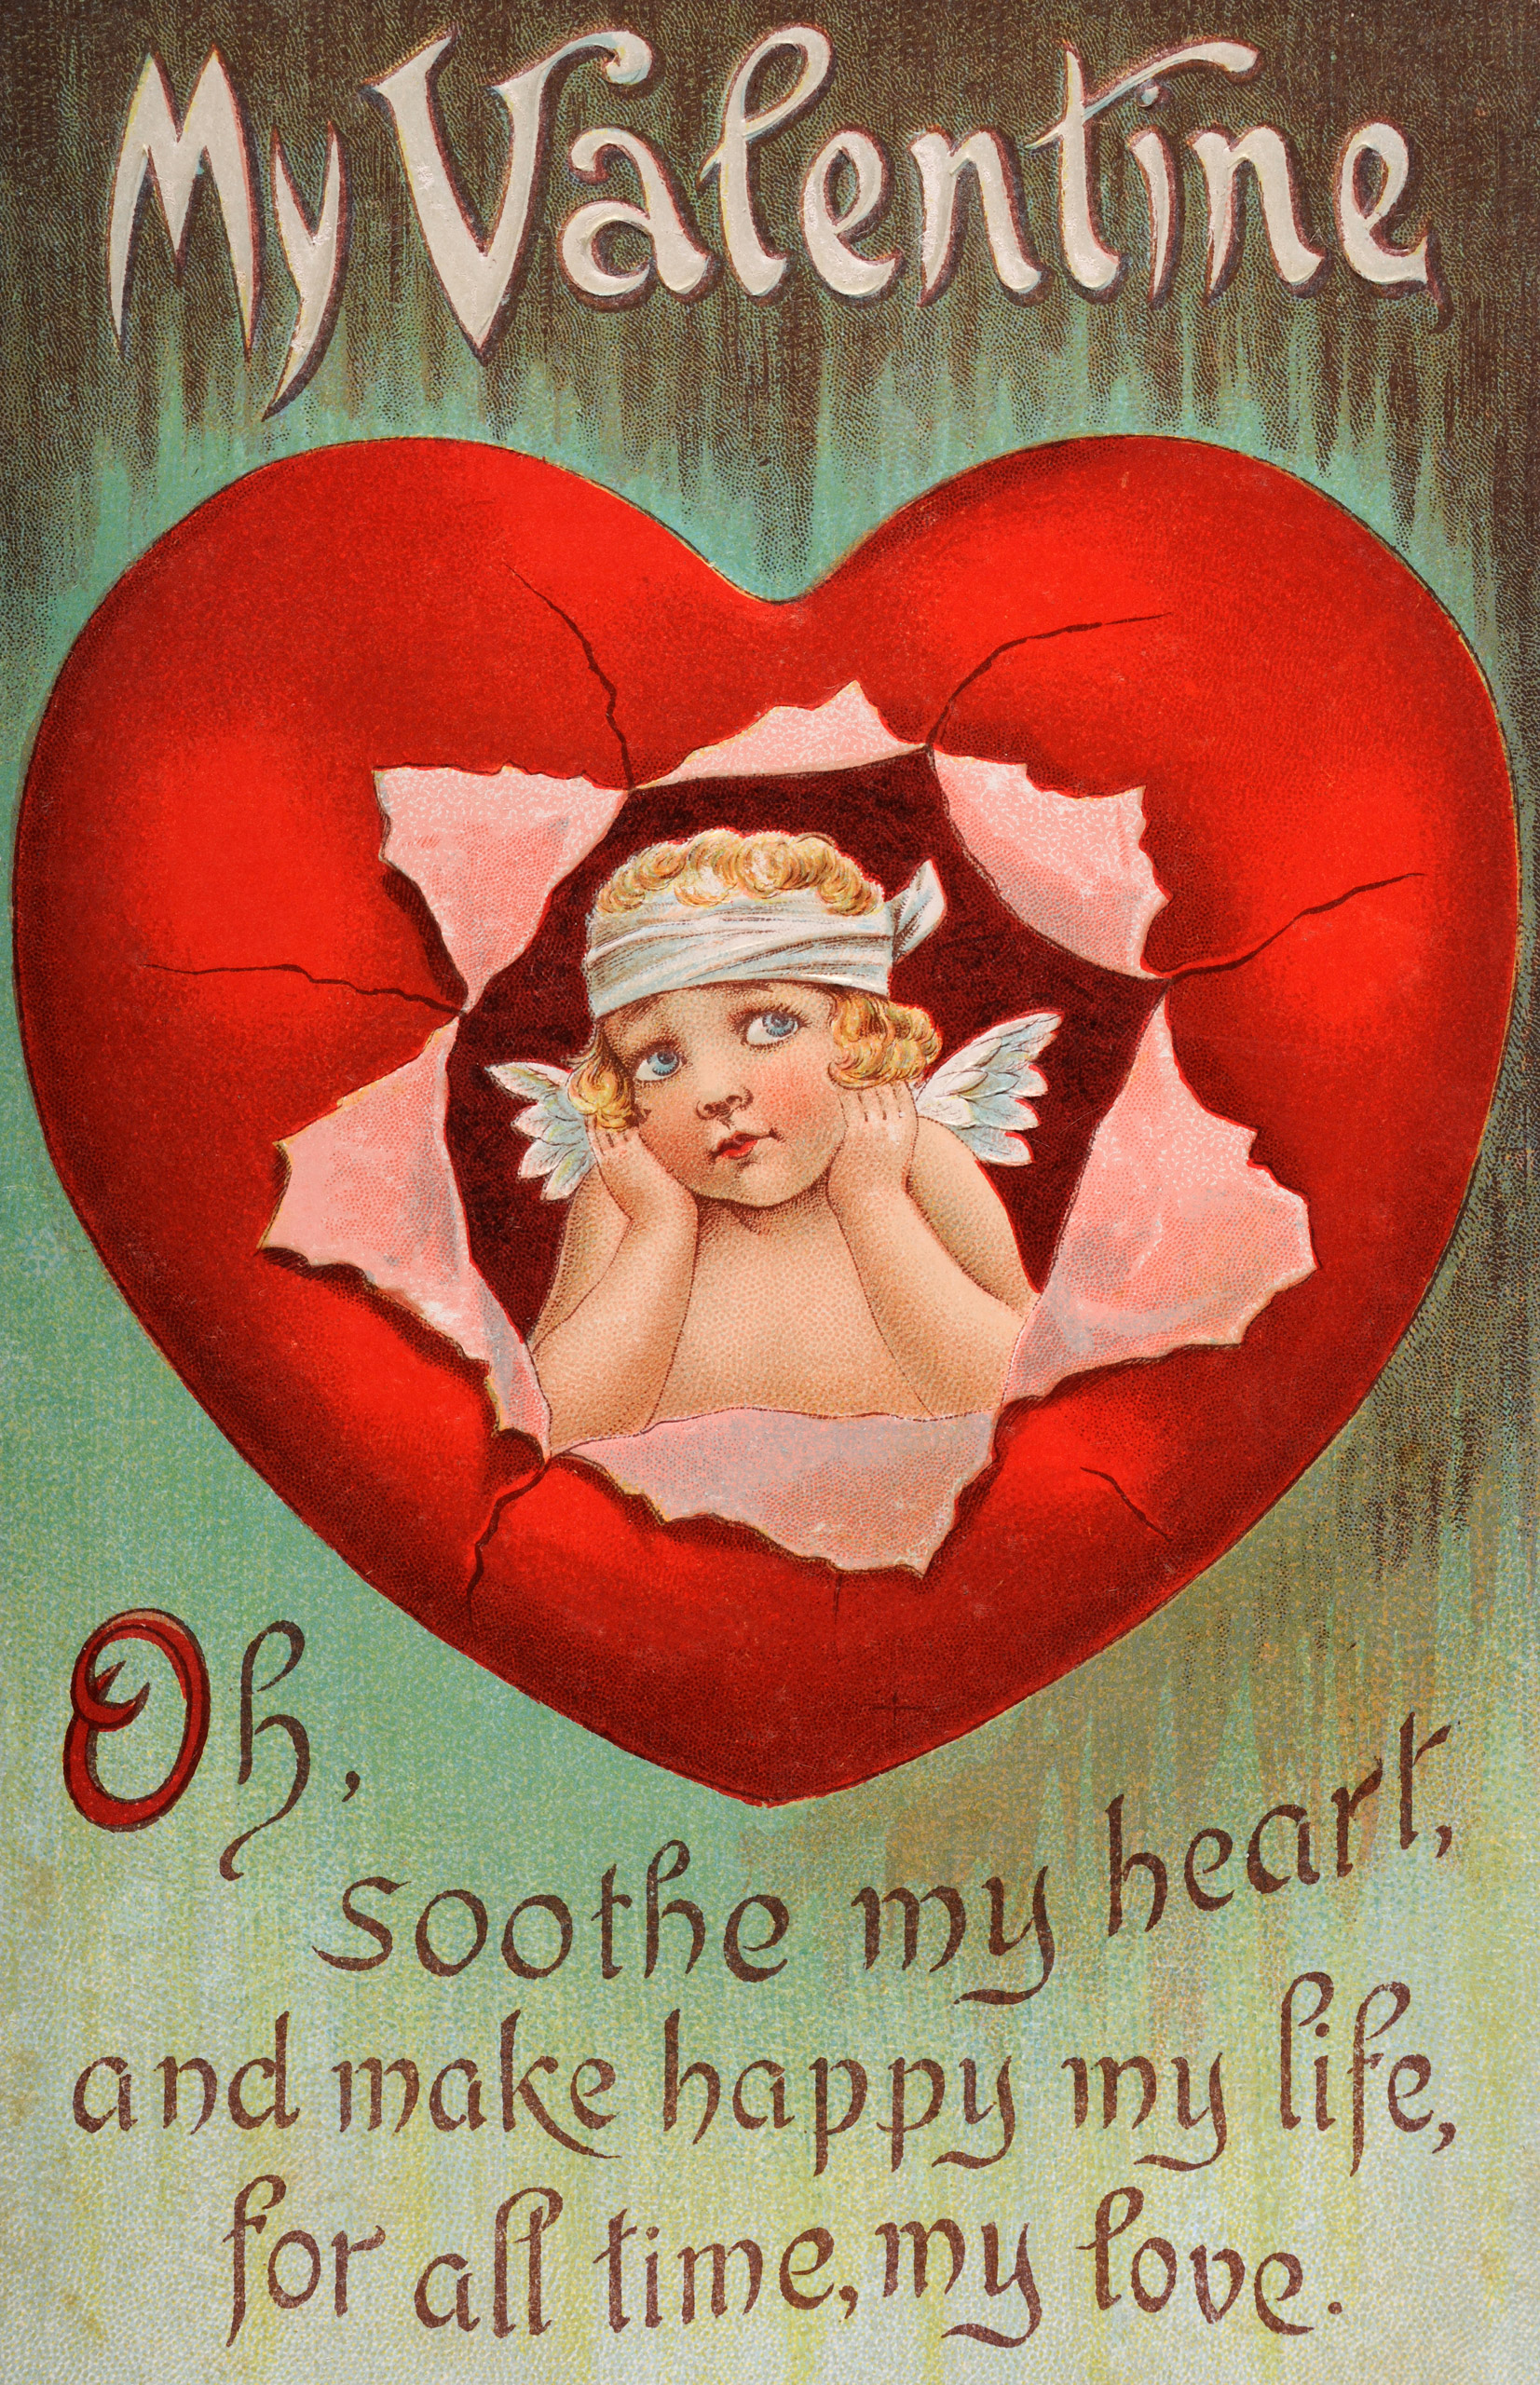 Vintage Valentine's Day card circa 1900.